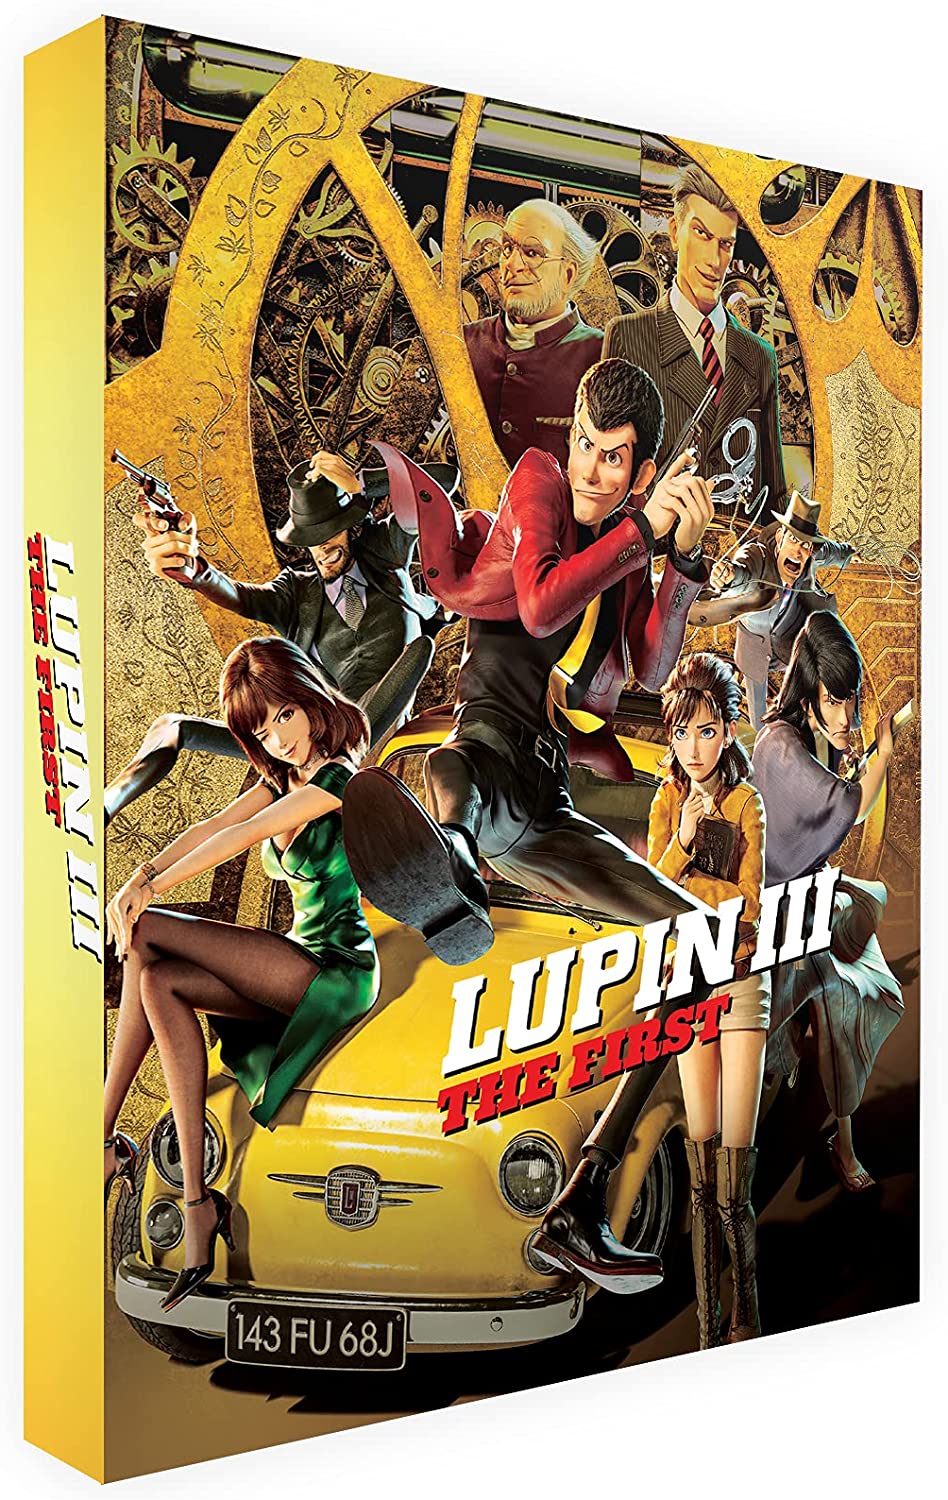 Lupin III: The First [Dual Format] [Blu-ray]